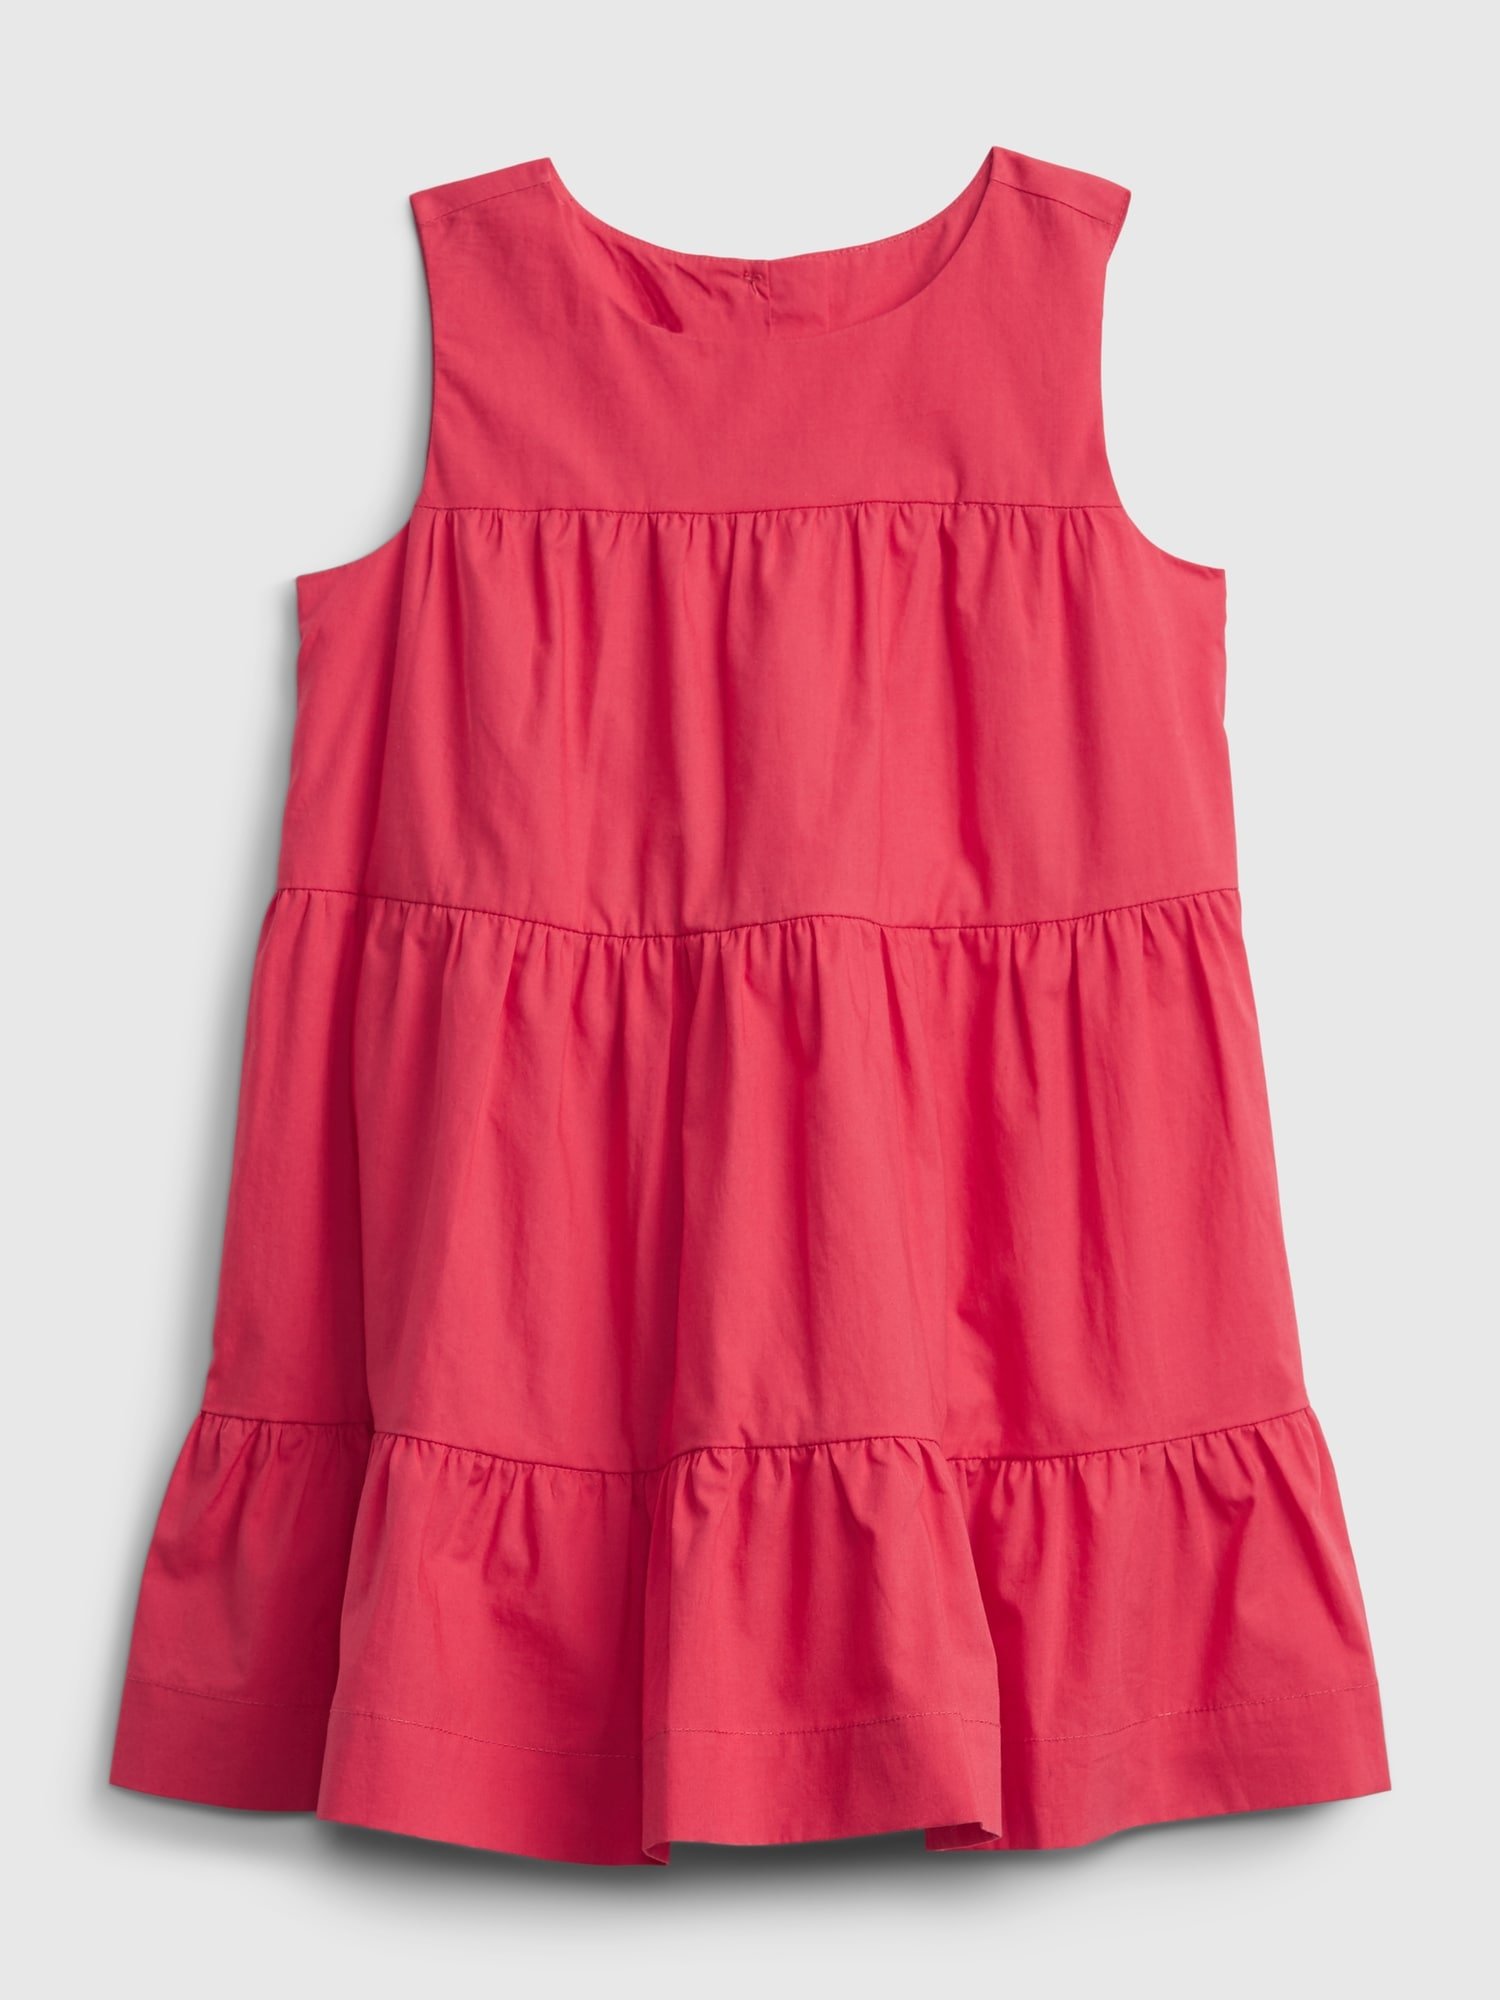 Fotografie Červené holčičí dětské šaty tiered dress